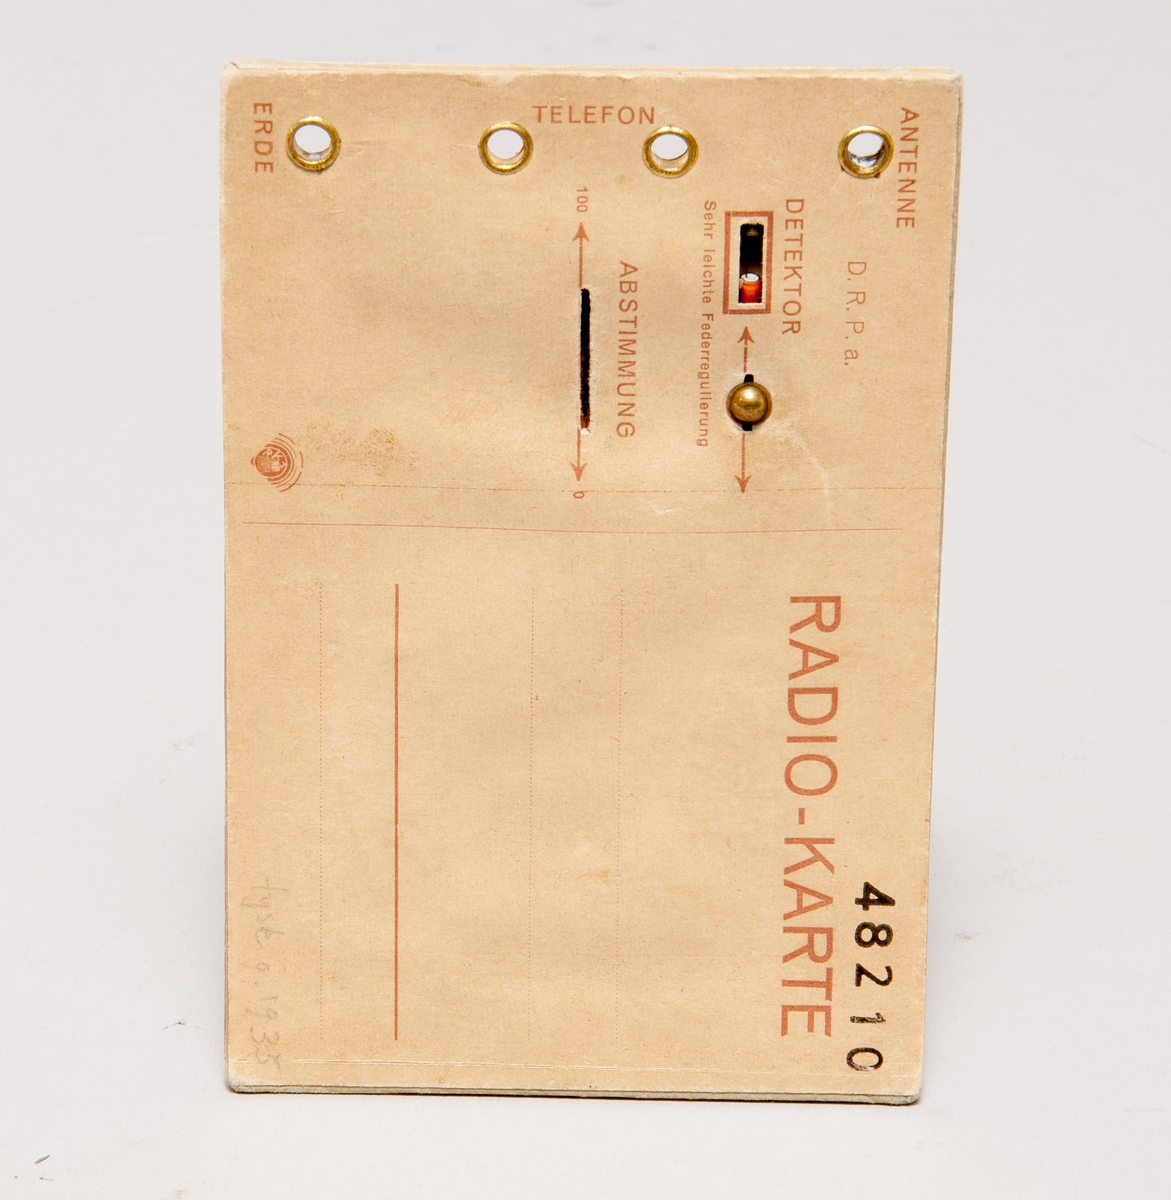 Kristallmottagare i form av vykort, med uttag för antenn, jord, hörtelefon. Kortet har påskriften "Der ist drollig!" samt inställningsmöjligheter för detektor och avstämning.